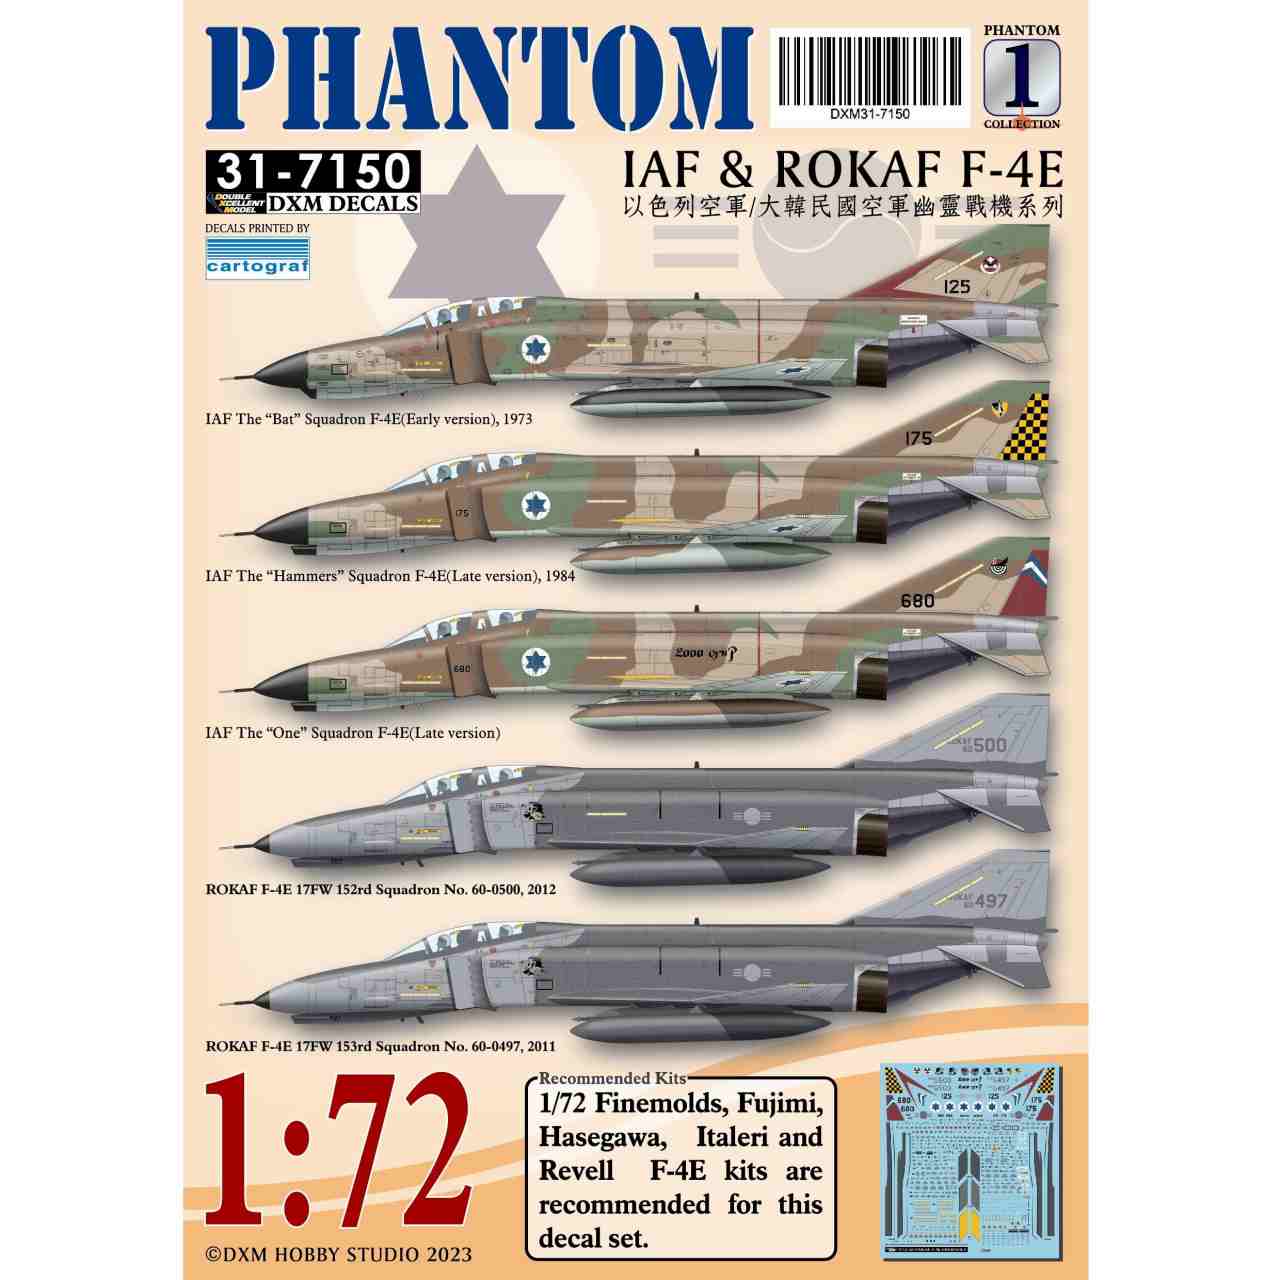 【再入荷】31-7150 イスラエル&韓国空軍 F-4E ファントムII Pt.1